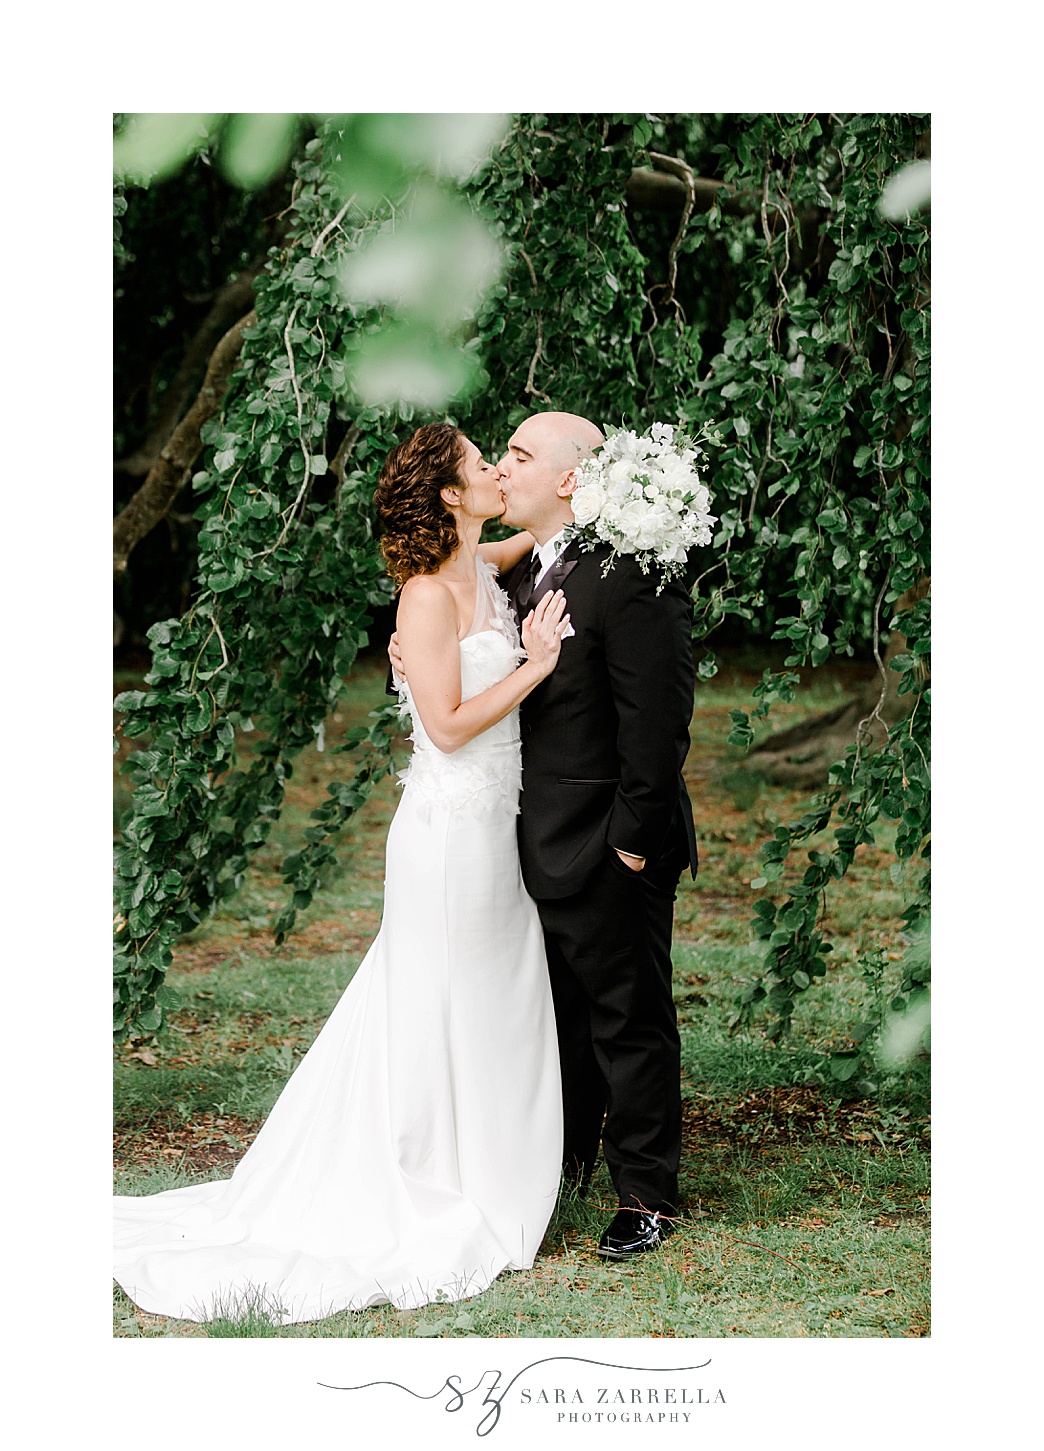 newlyweds kiss under tree at The Elms in Newport RI